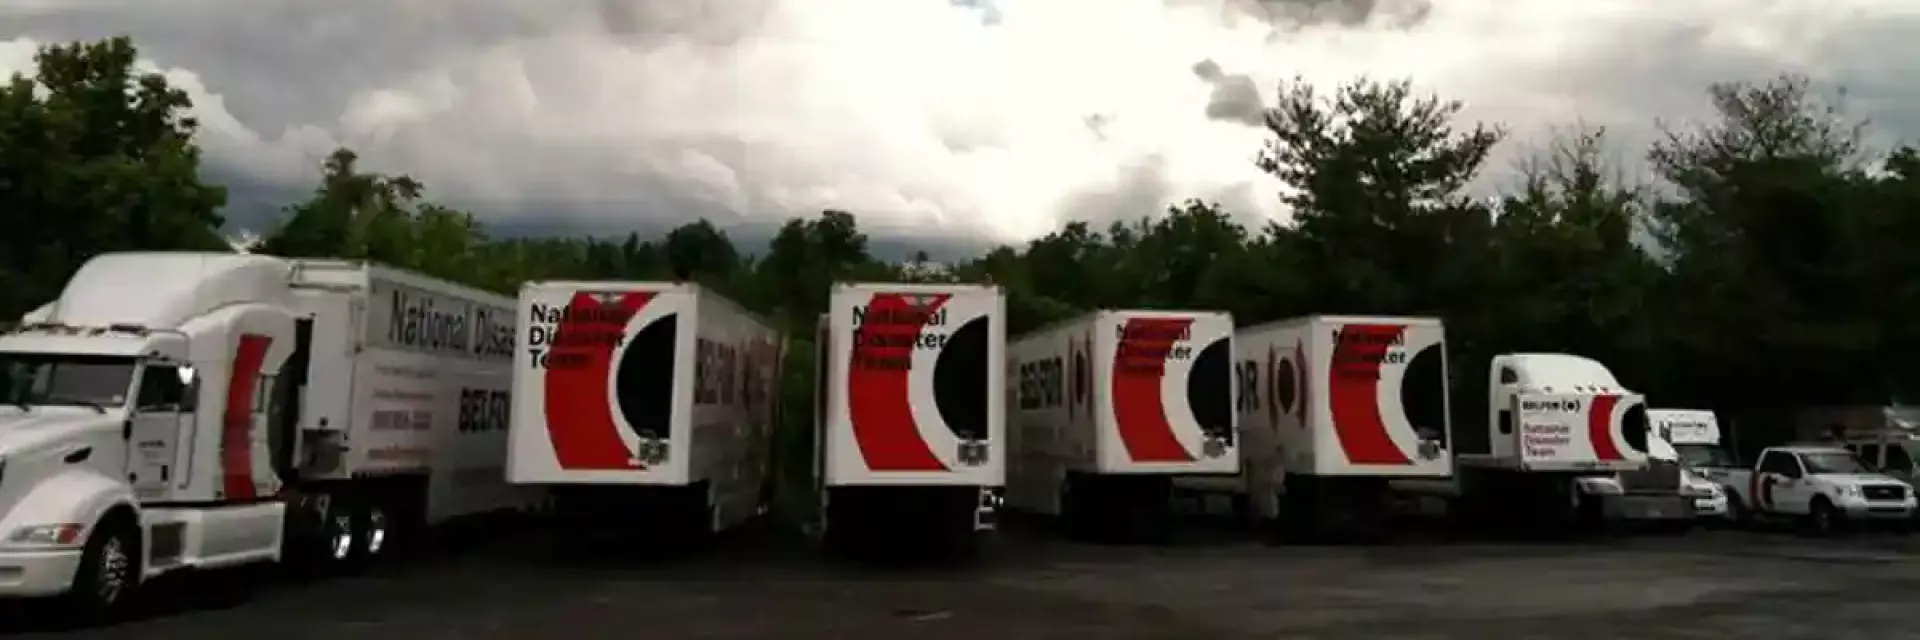 BELFOR truck fleet under dark sky